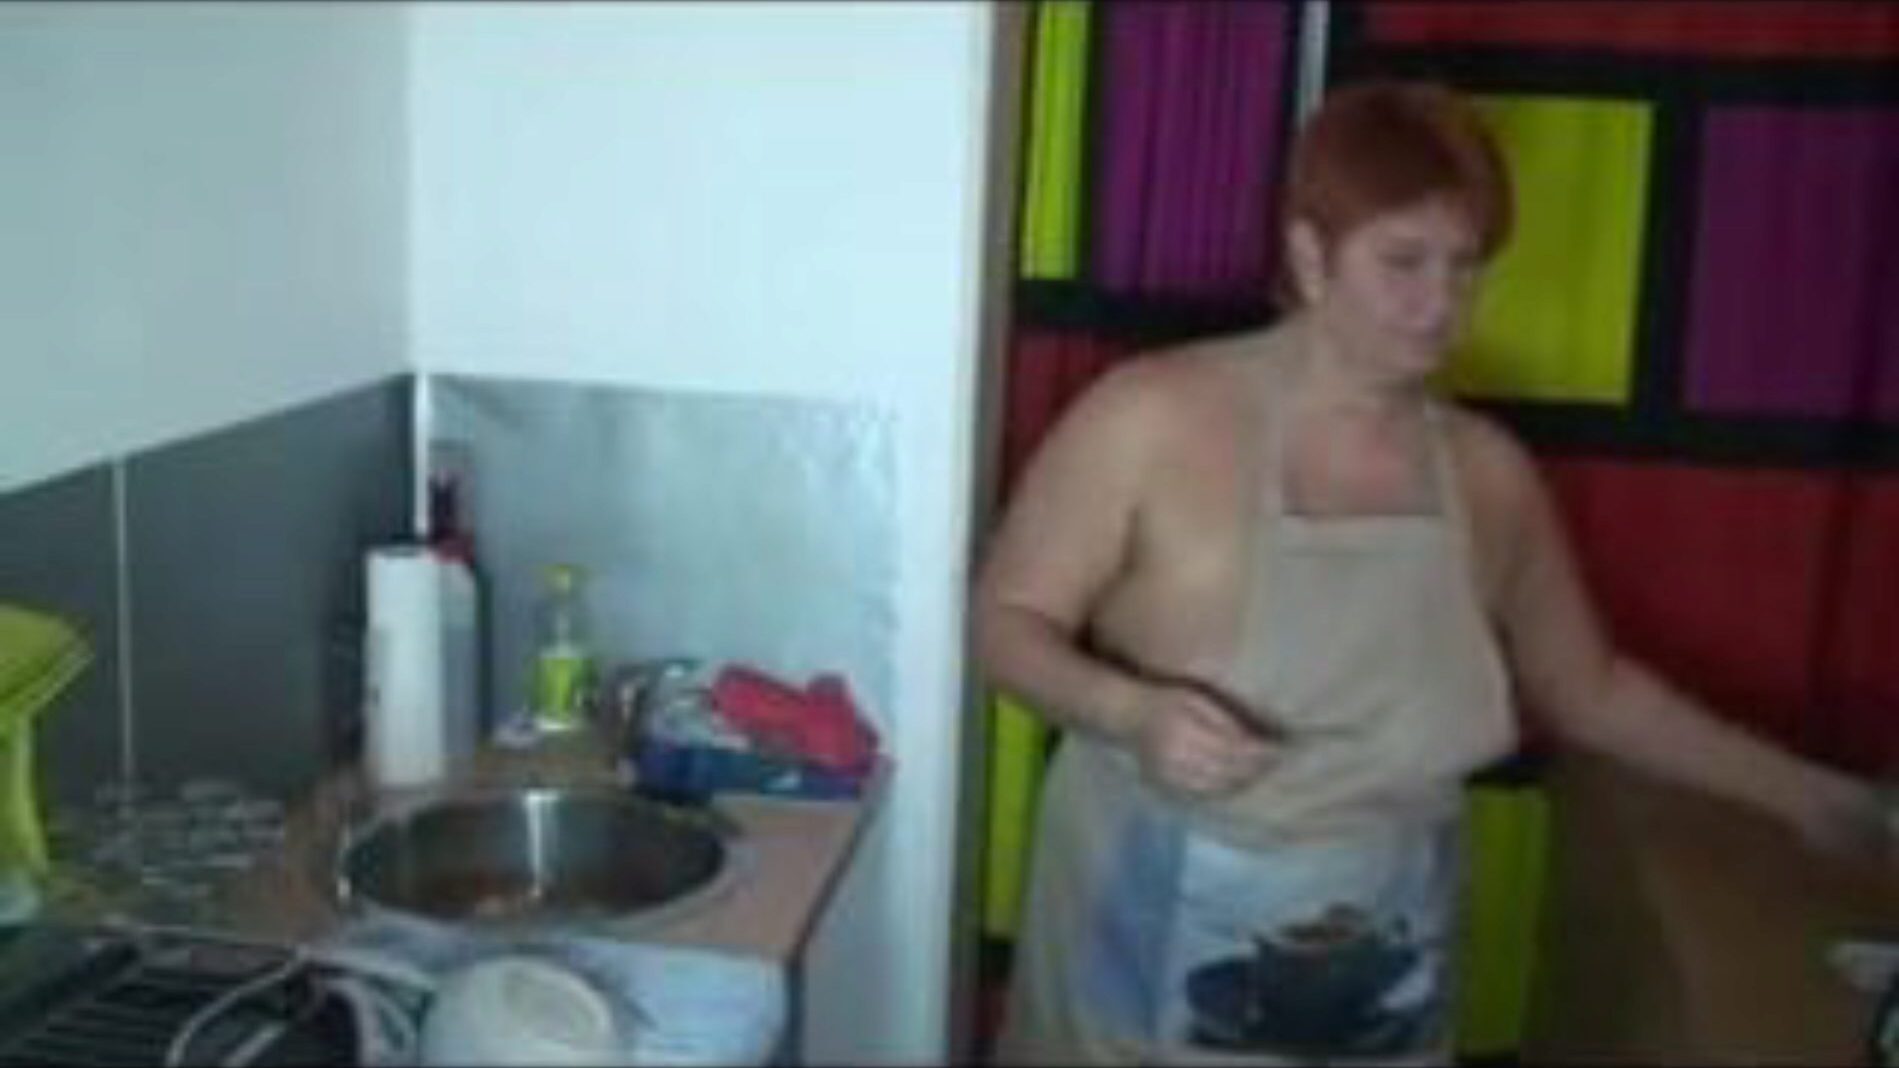 când spălați vase în bucătărie, porno gratuit 55: ceas xhamster când spălați vase în bucătărie clip pe xhamster, site-ul gigant al tubului sexual cu tone de videoclipuri porno germane cele mai tari și sunătoare gratuite